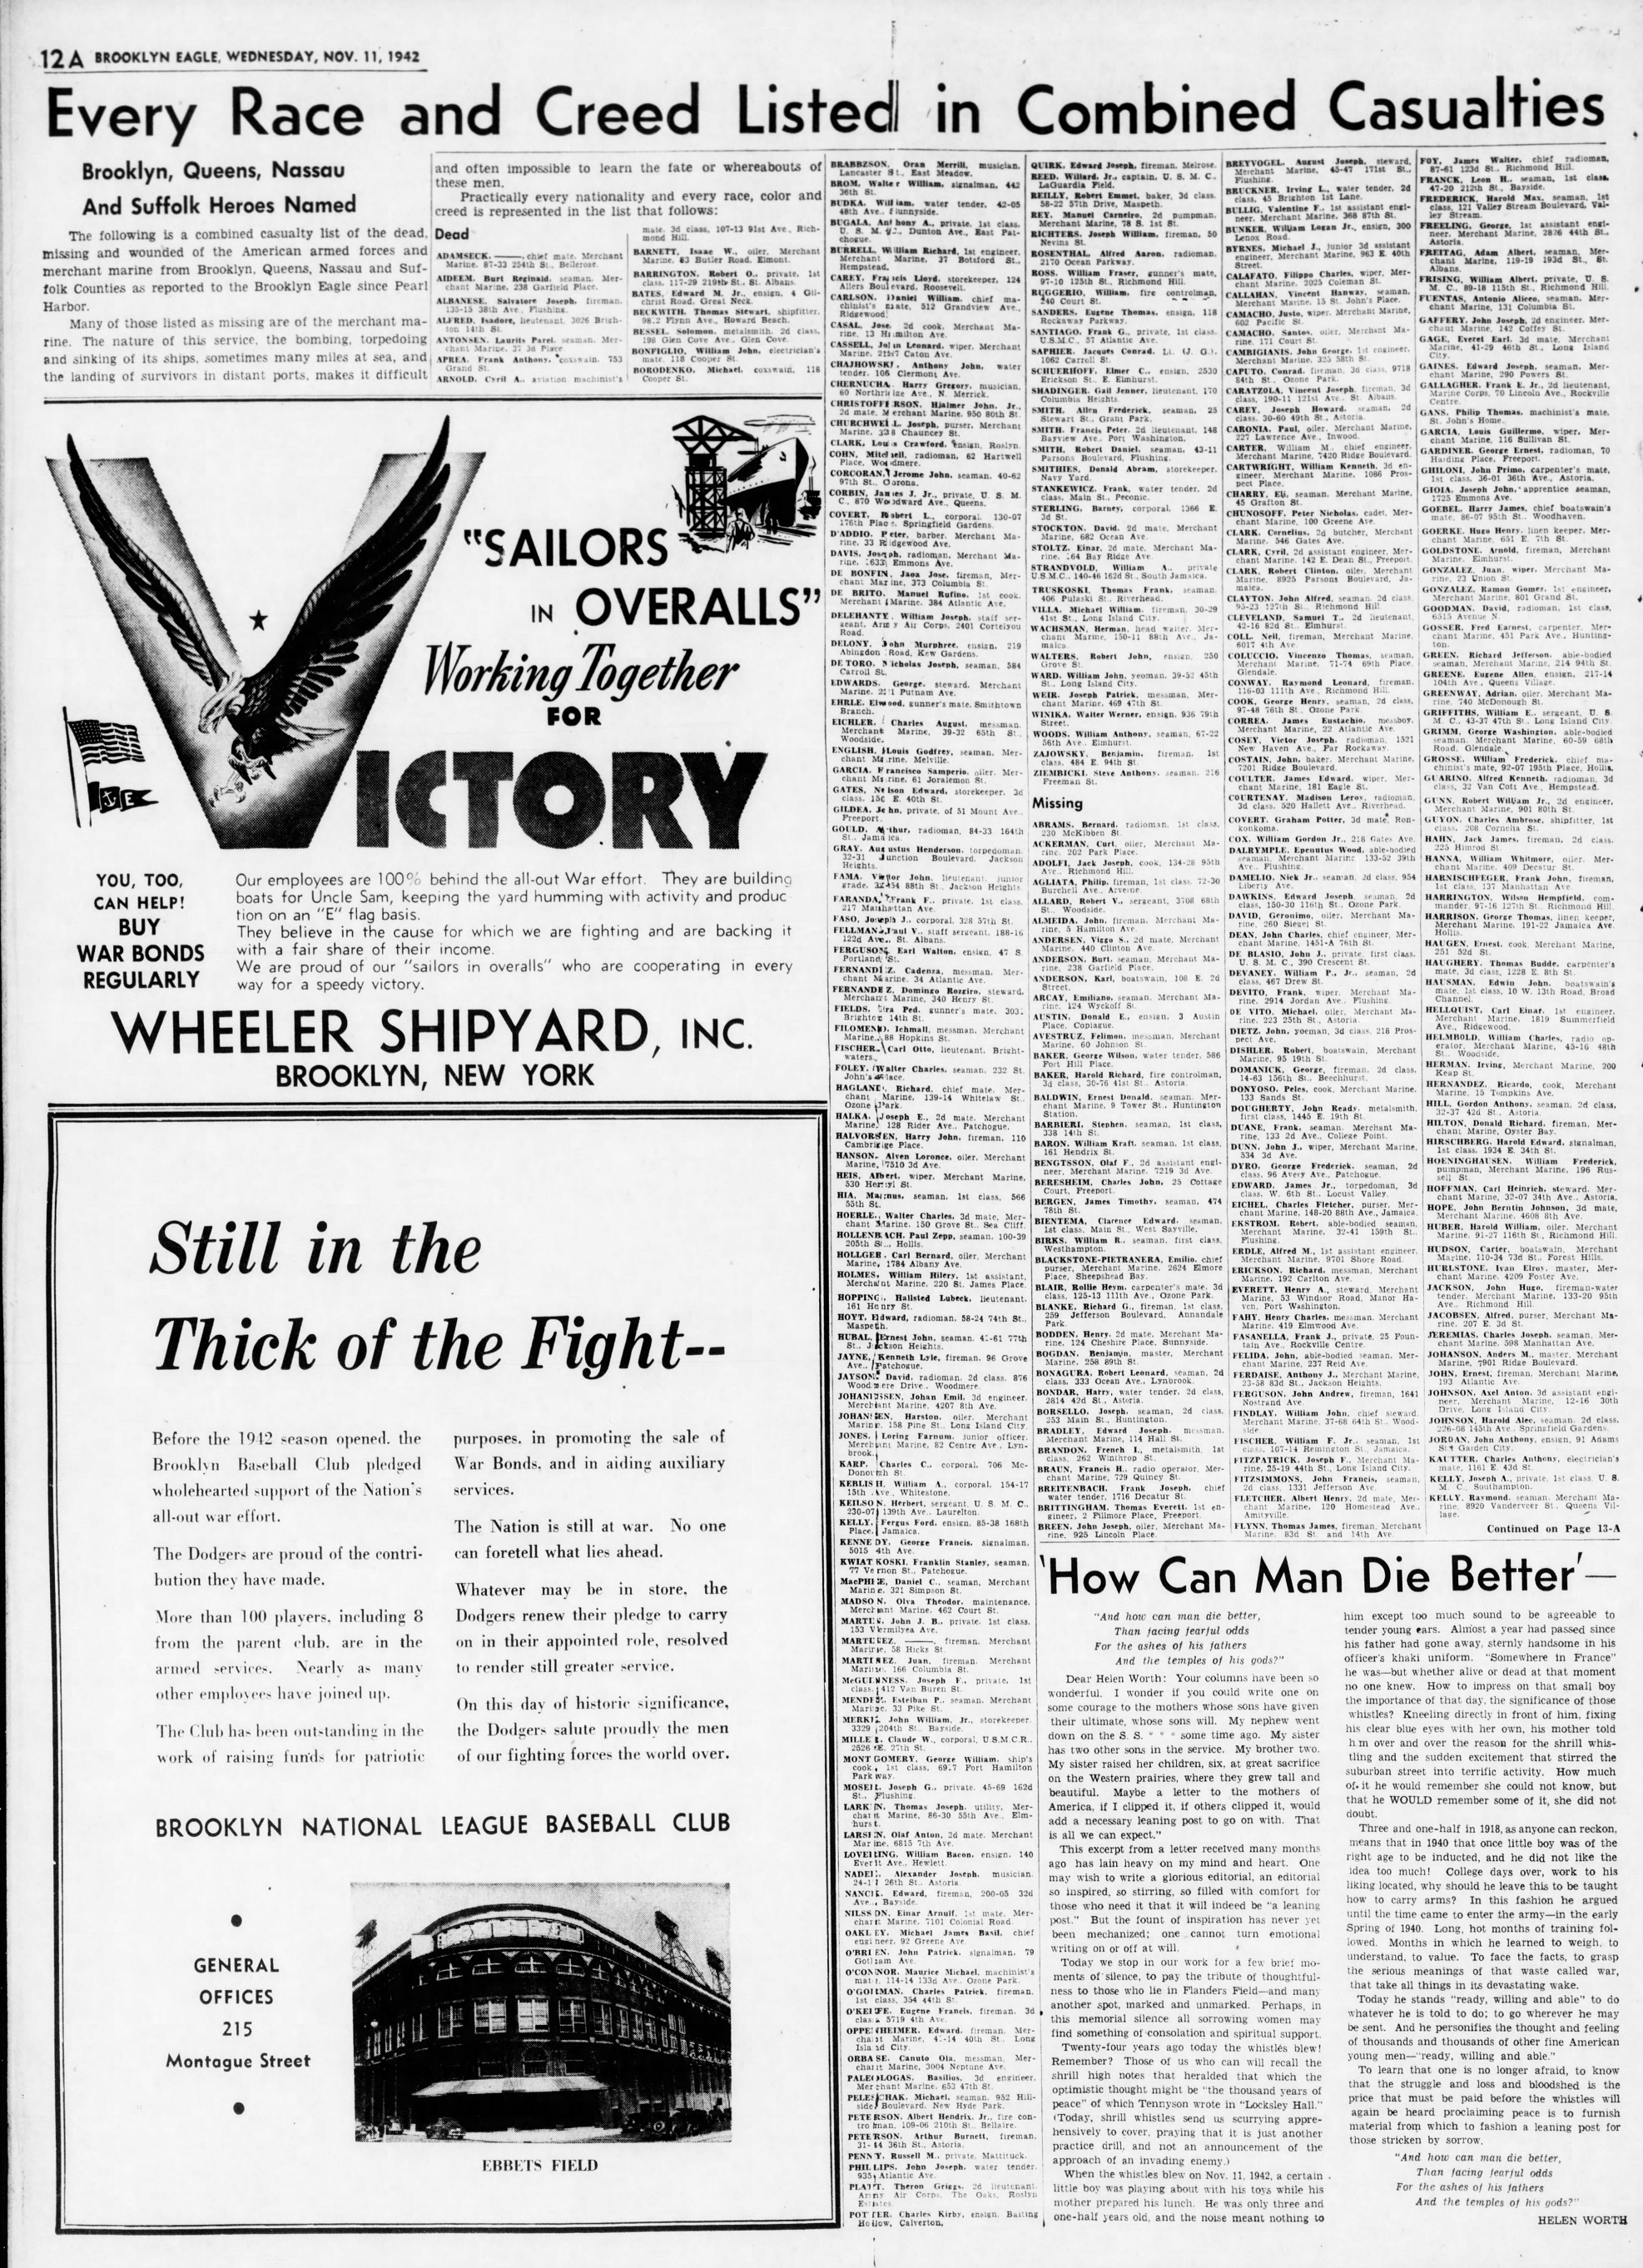 The_Brooklyn_Daily_Eagle_Wed__Nov_11__1942_(13).jpg